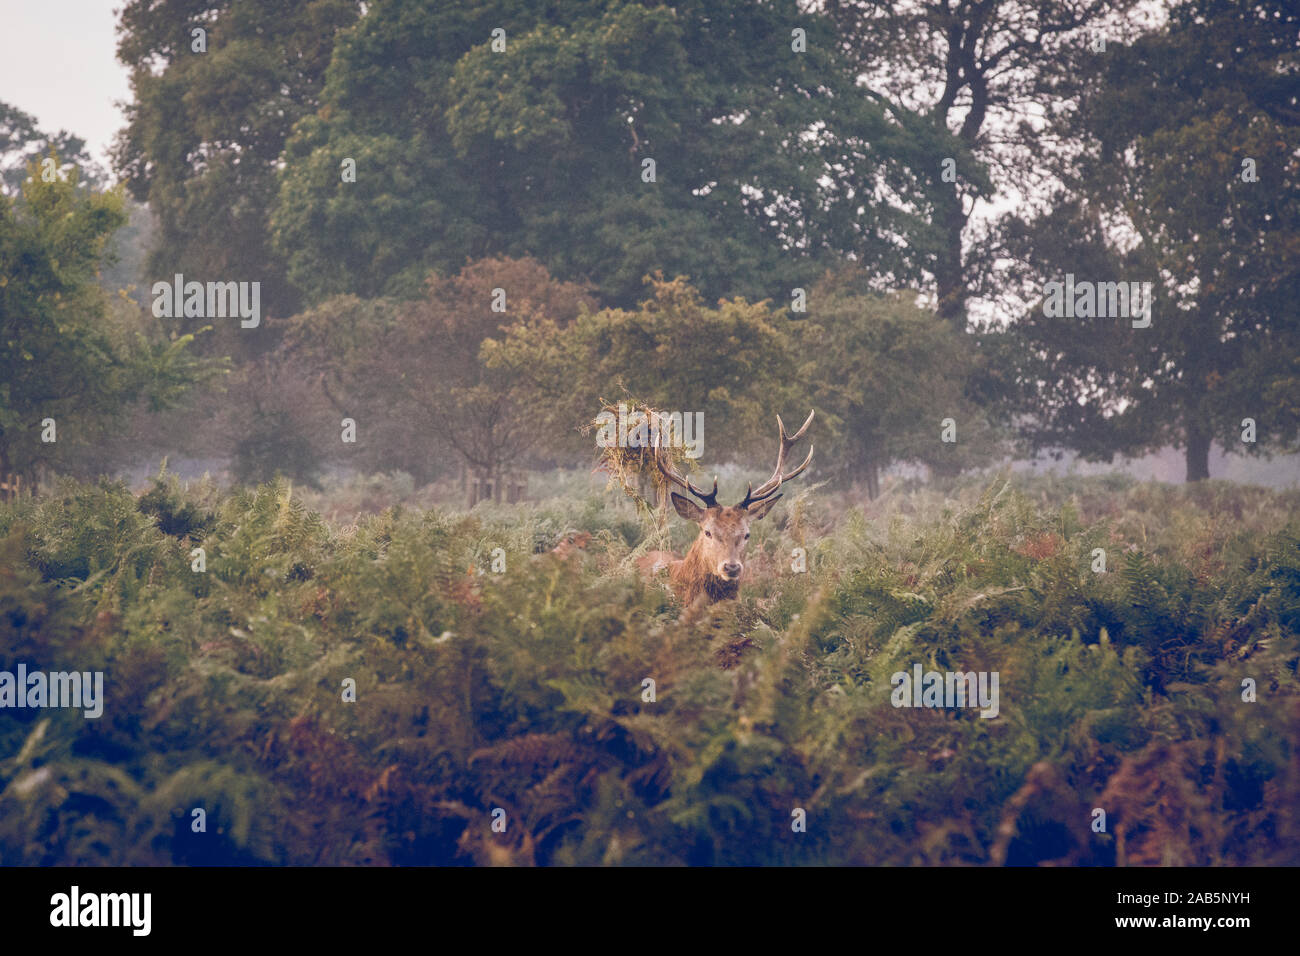 Dans l'enterrement de fougères au cours de l'automne Deer Rut à Richmond Park, Angleterre Banque D'Images